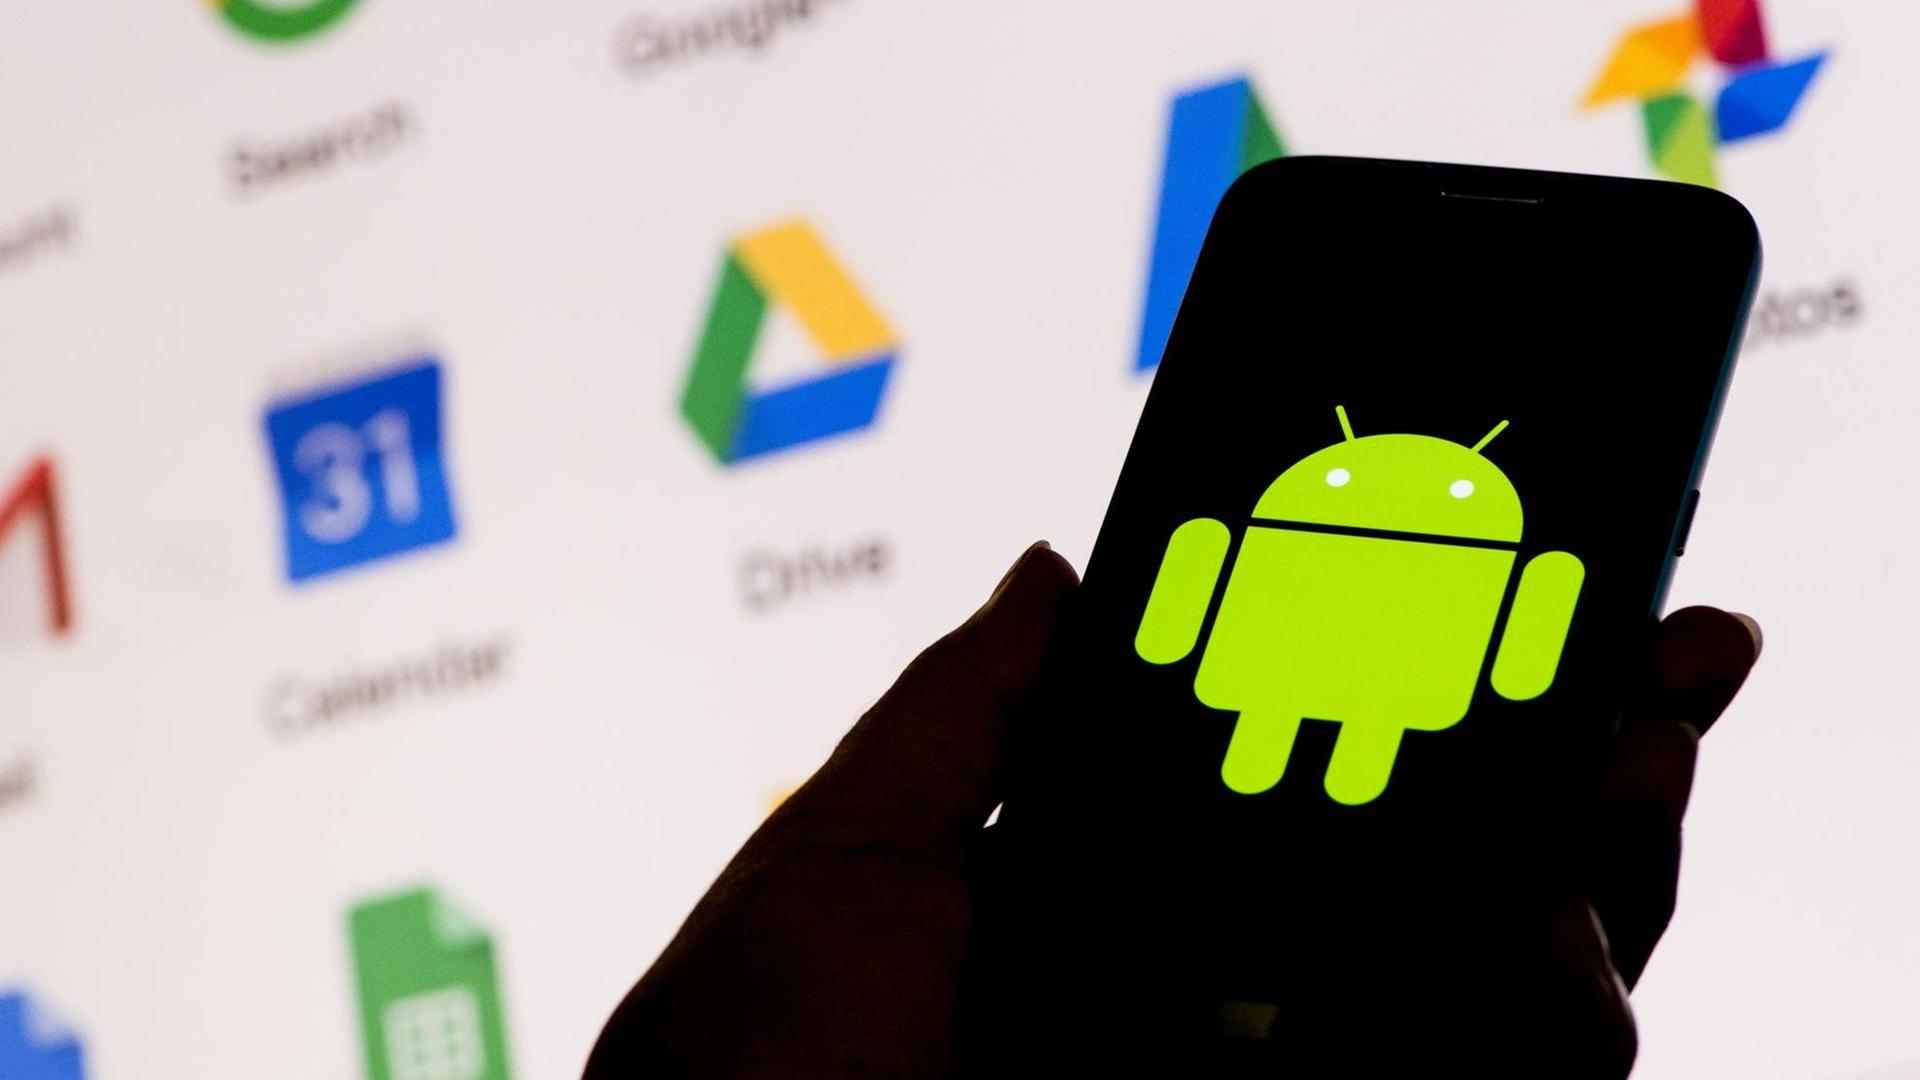 Ein Smartphone zeigt das Android-Logo von Google, dahinter ein Bildschirm